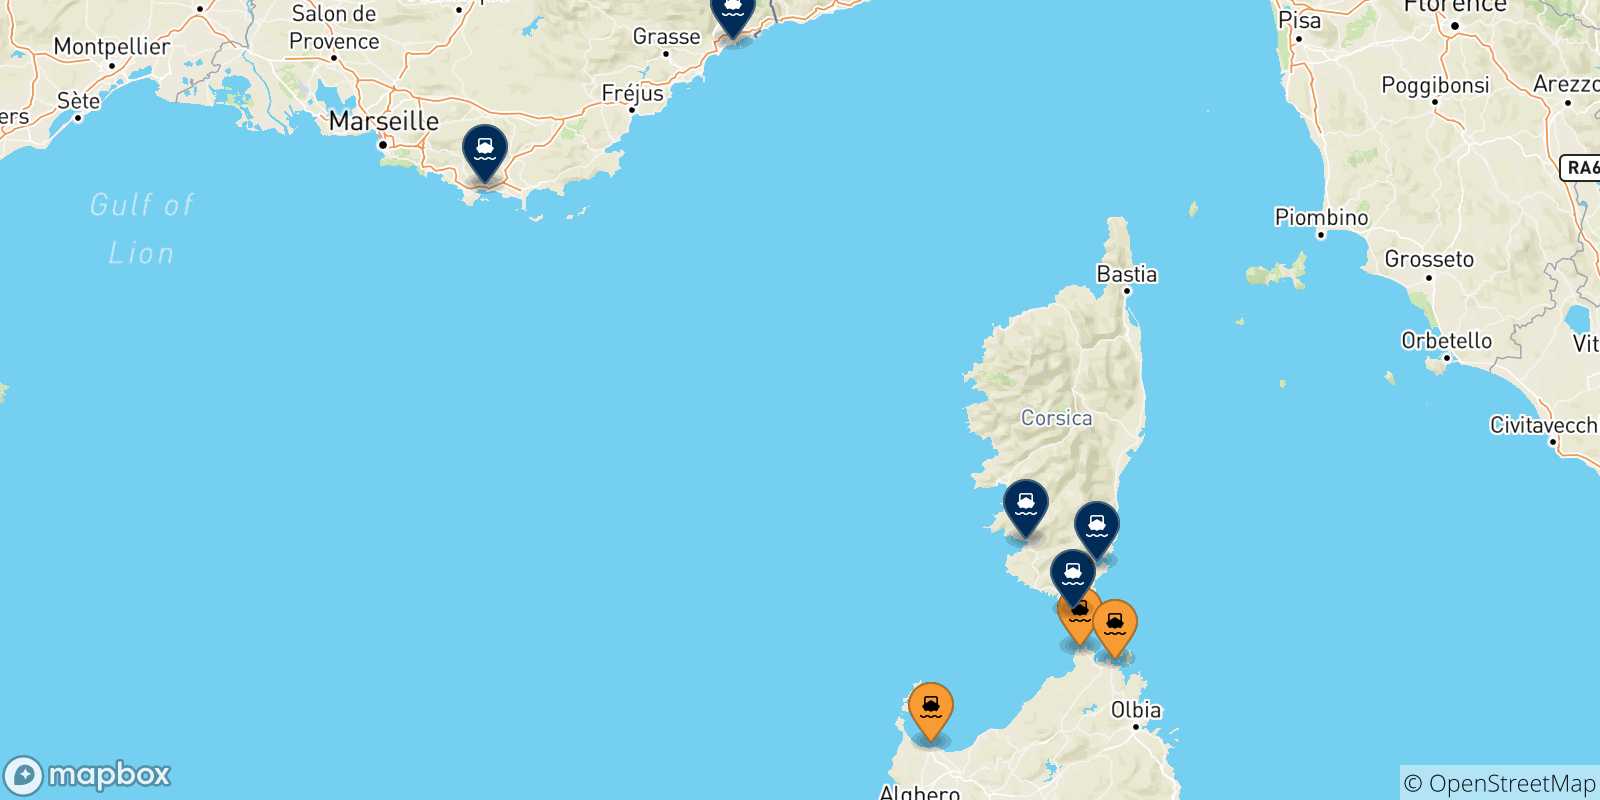 Mappa delle possibili rotte tra la Sardegna e la Francia